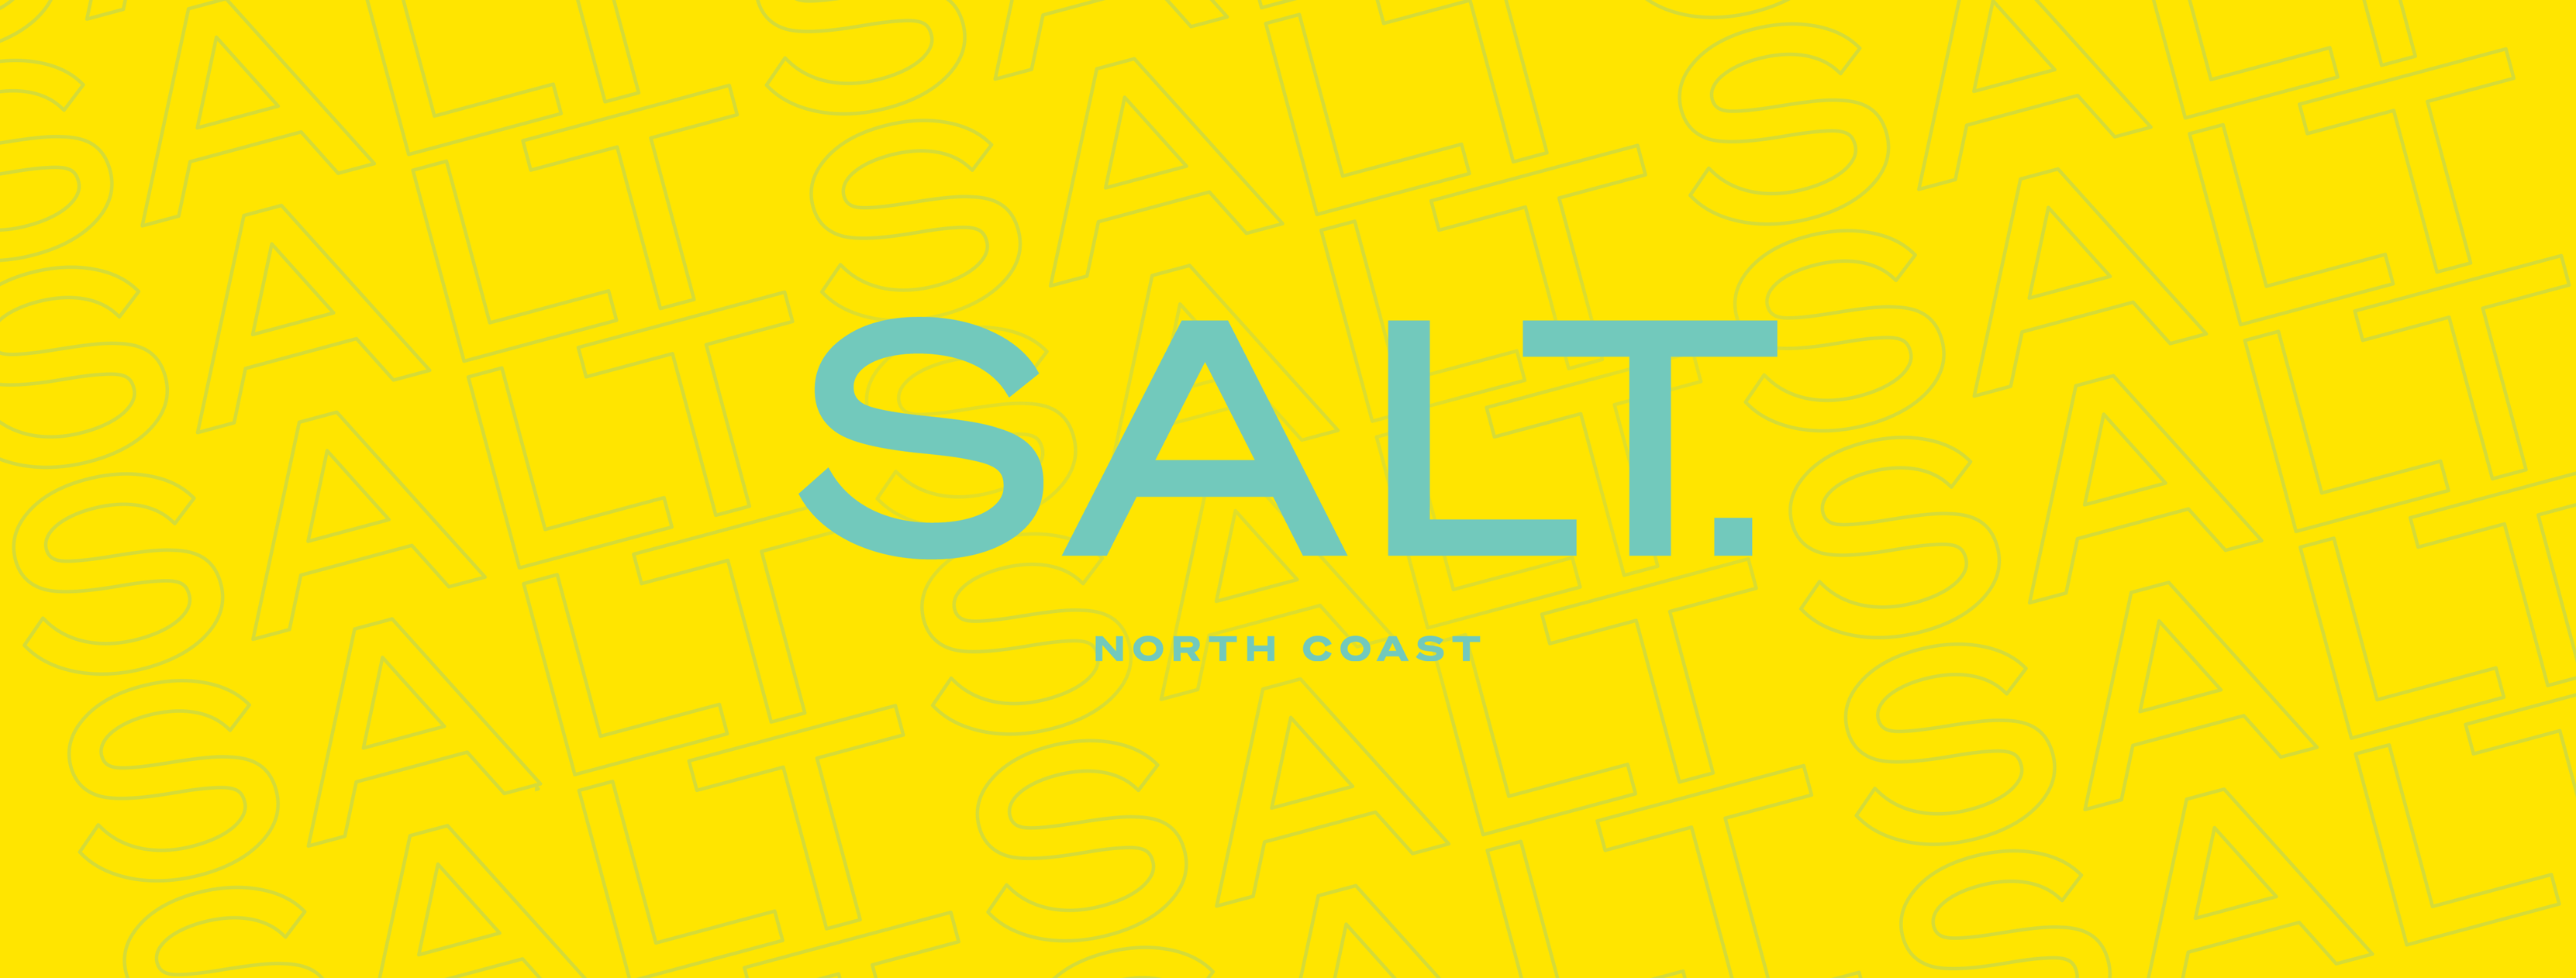 تطوير مصر تطرح مشروعها الجديد Salt بالساحل الشمالي